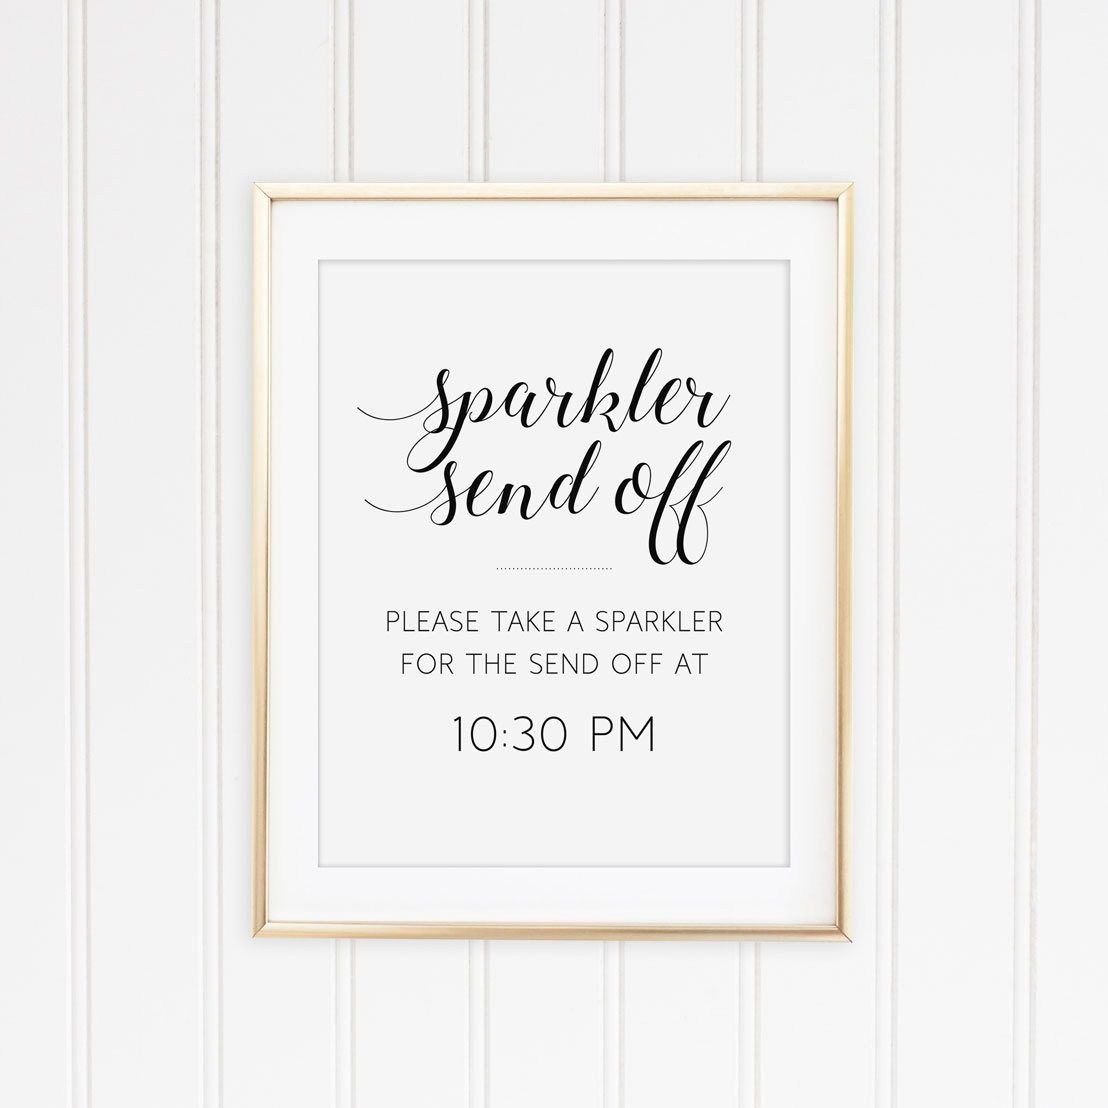 Sparkler Sign Printable Sparkler Send Off Sign Wedding | Etsy - Free Printable Wedding Sparkler Sign